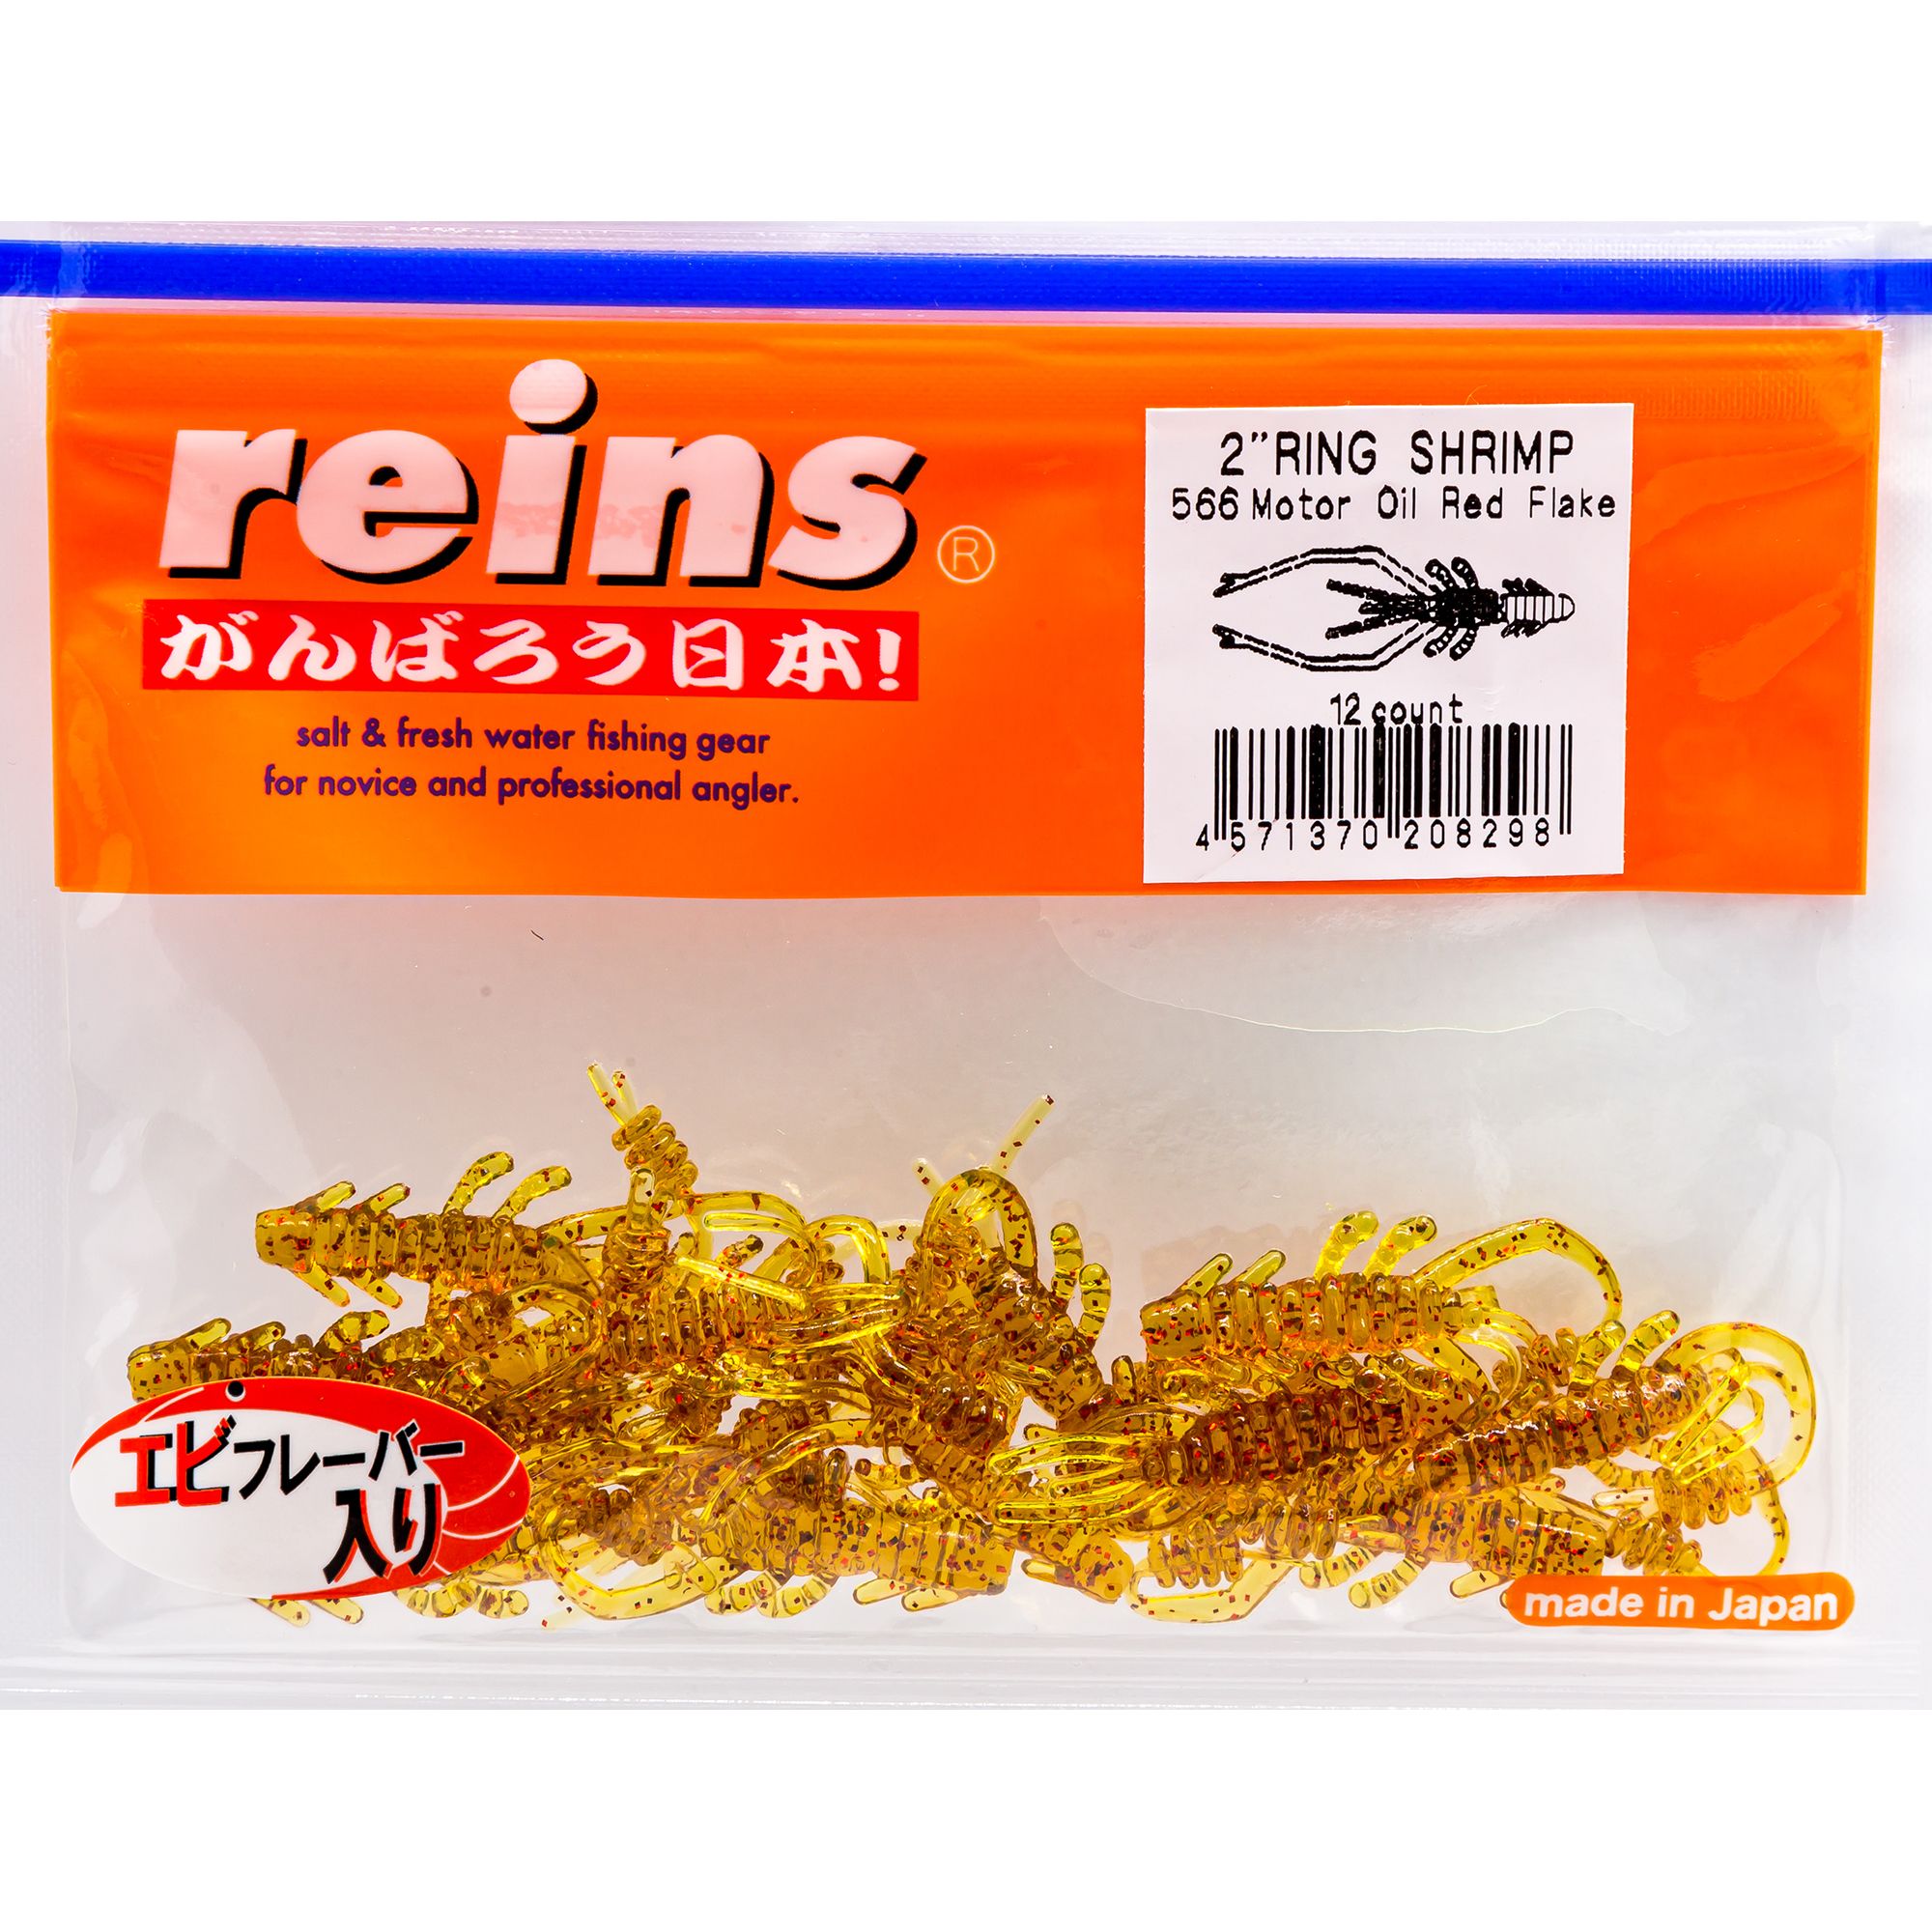 Силиконовая приманка Reins Ring Shrimp 50 мм цвет 566 Motor Oil Red 12 шт